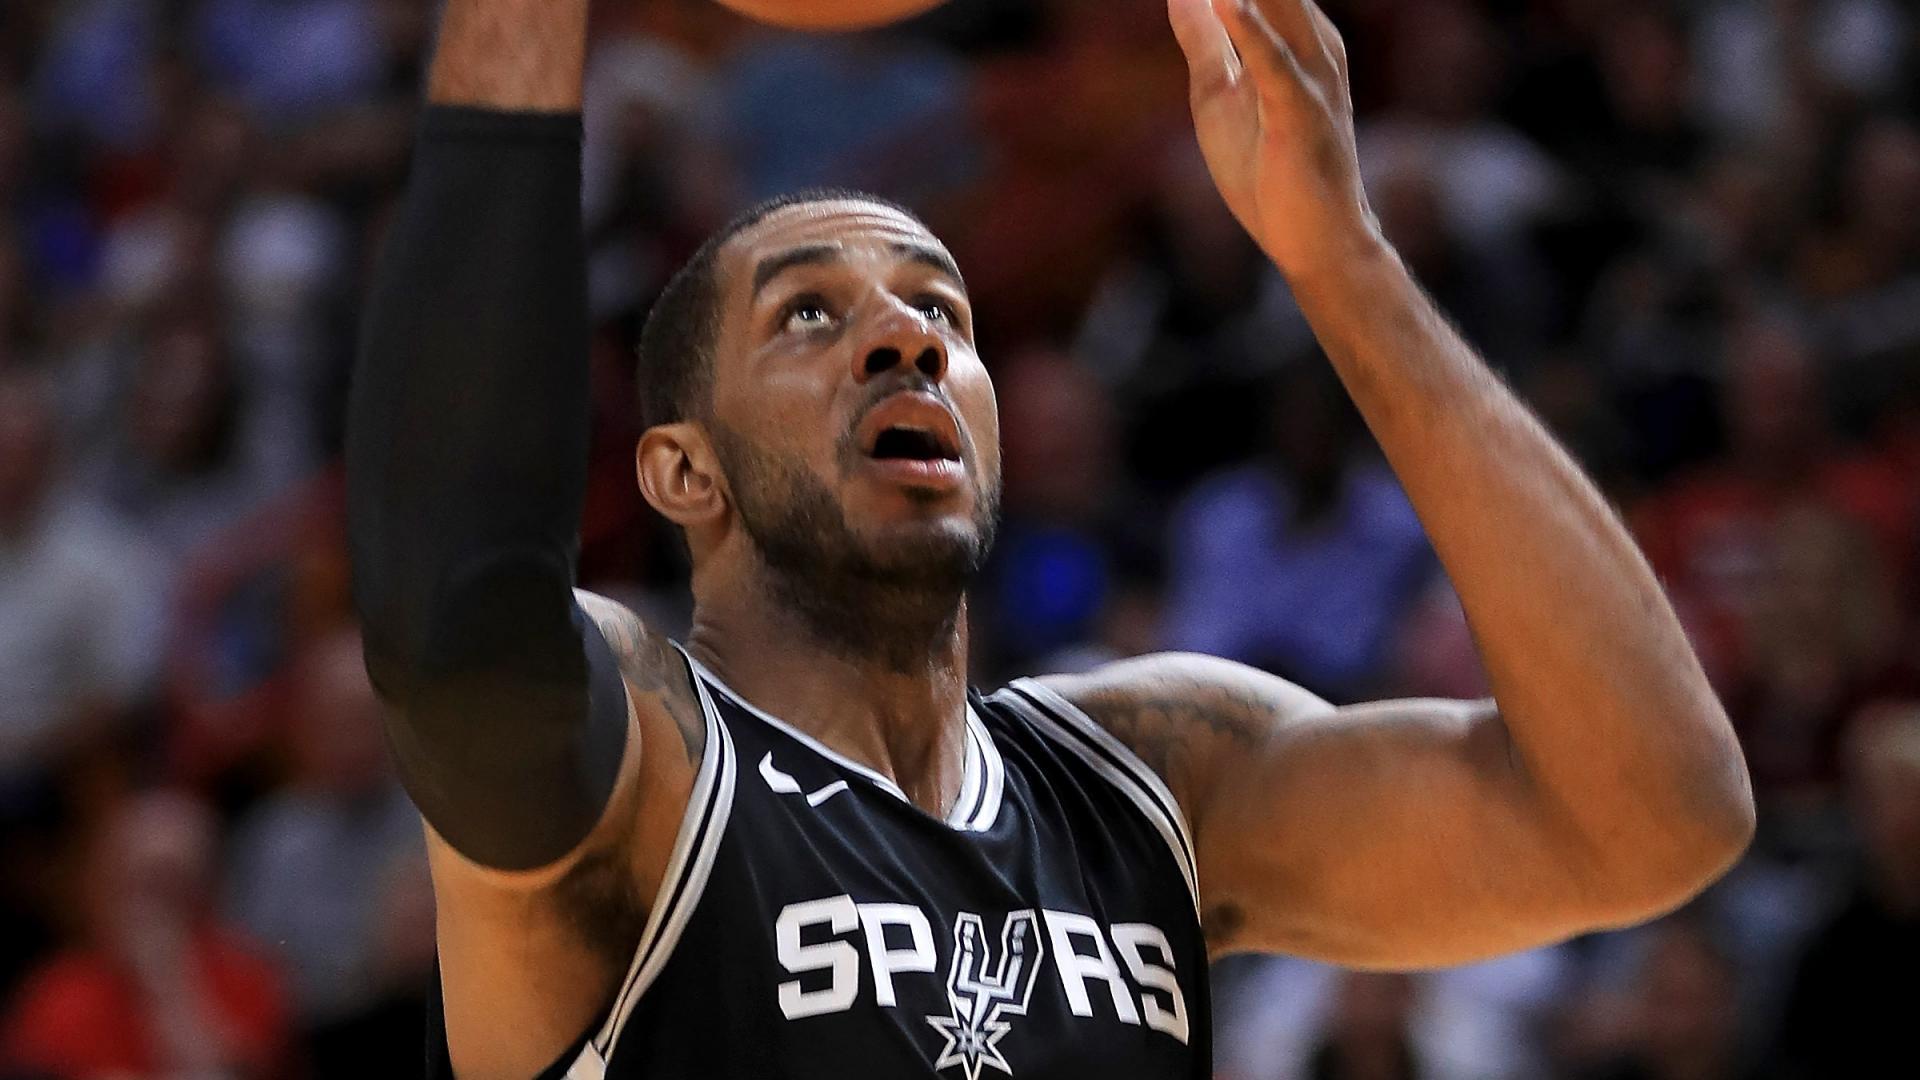 Kalahkan Heat, Spurs Jaga Rekor 100 Persen Kemenangan